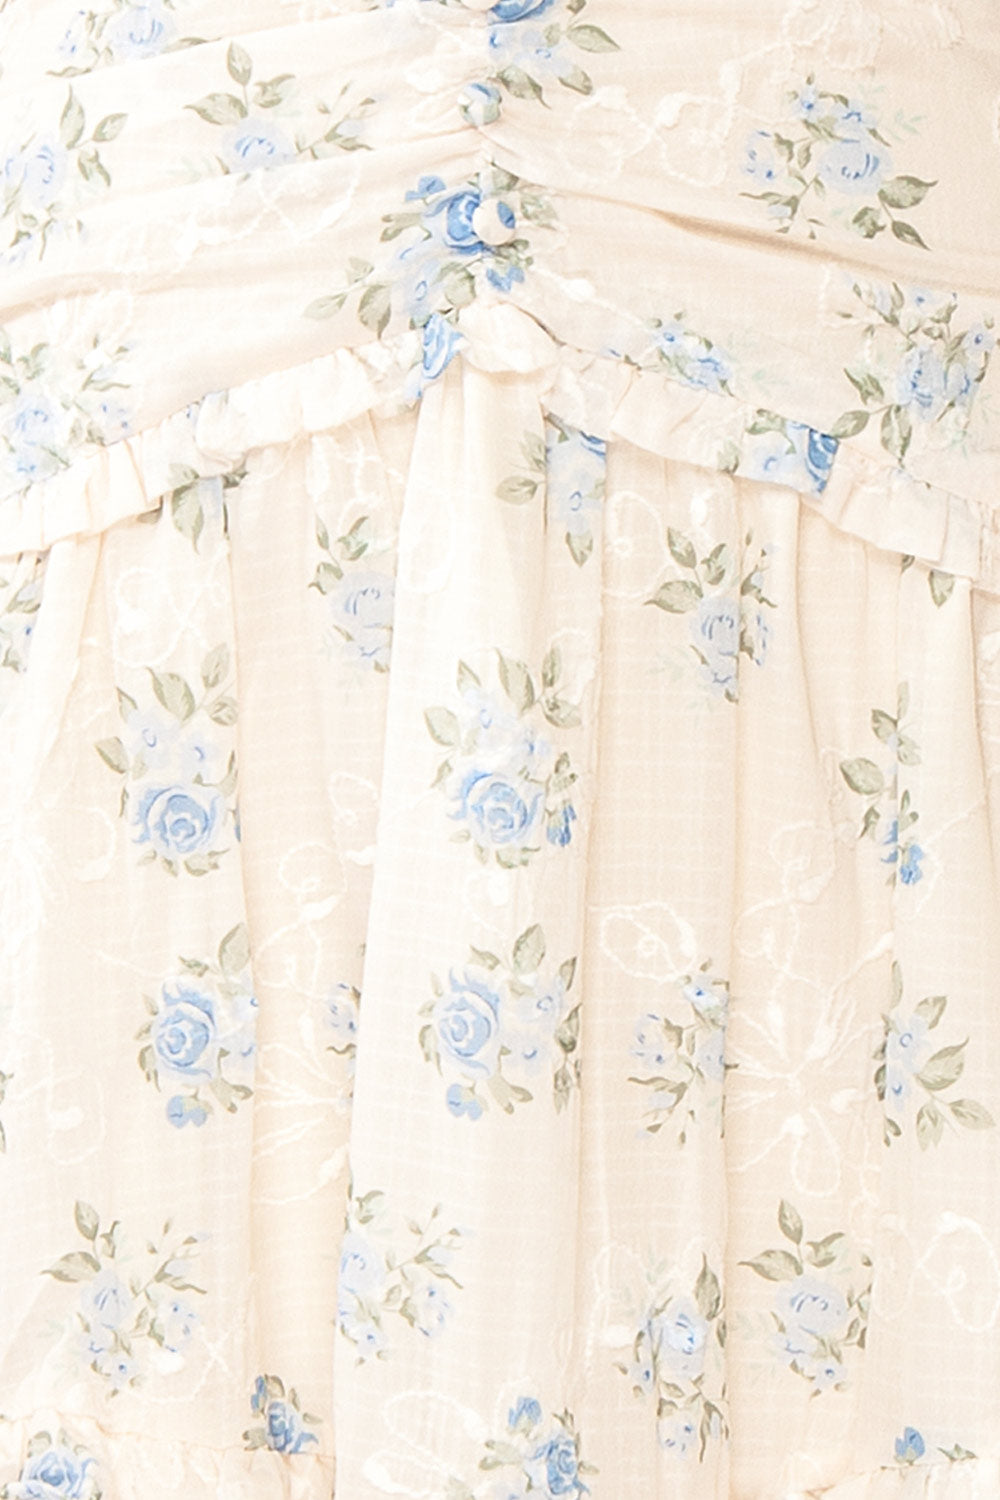 Ursula Long White Dress w/ Vintage Floral Motif | Boutique 1861 fabric 